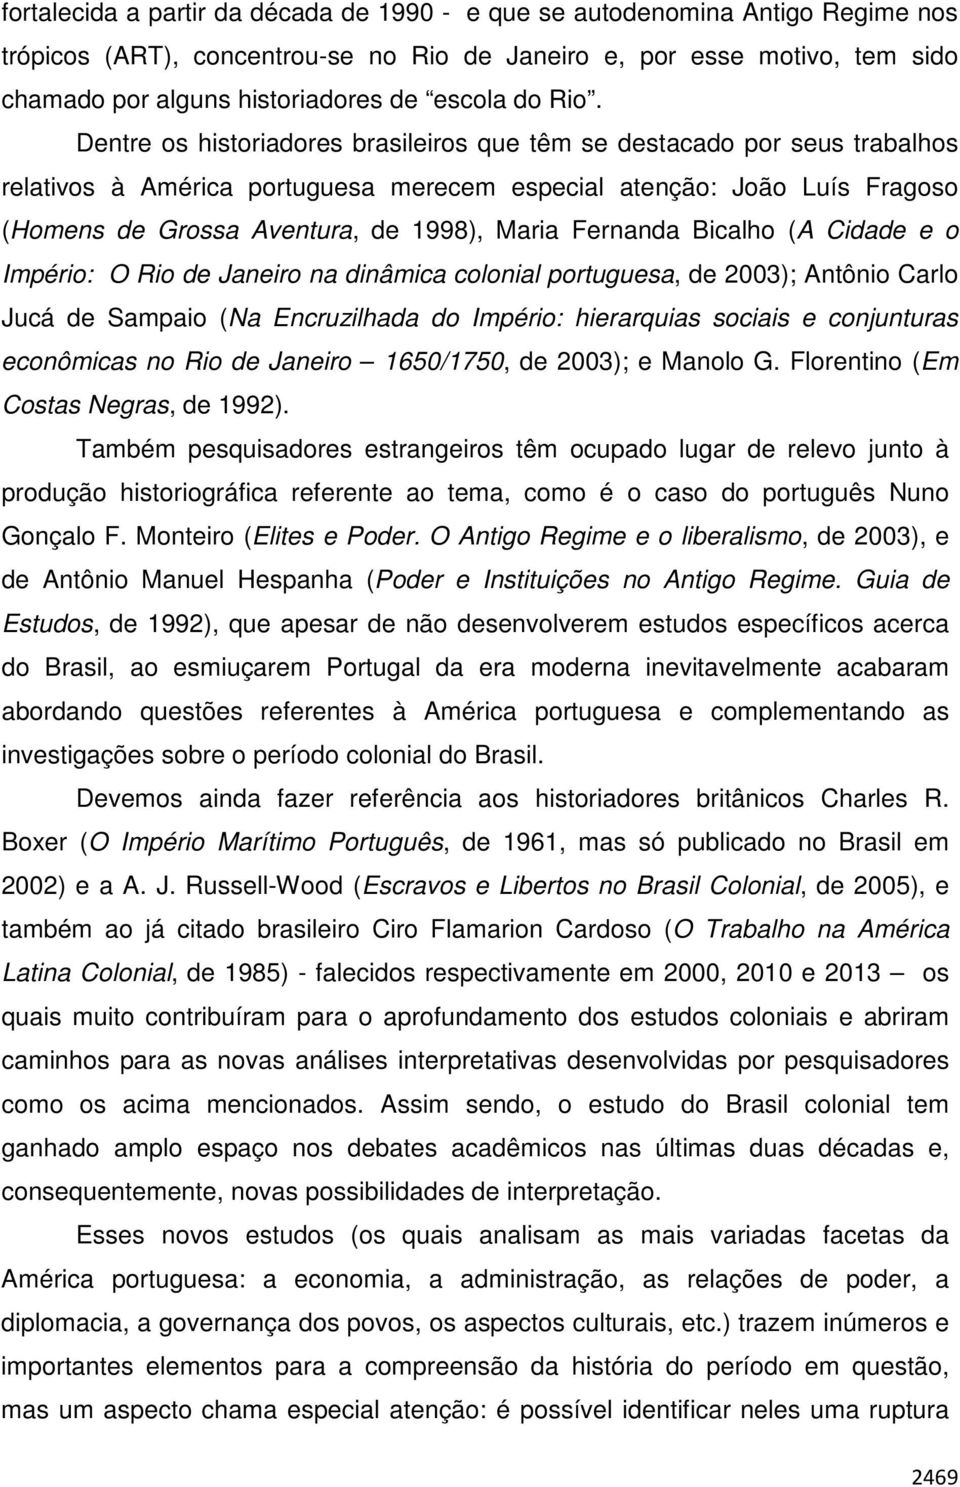 Dentre os historiadores brasileiros que têm se destacado por seus trabalhos relativos à América portuguesa merecem especial atenção: João Luís Fragoso (Homens de Grossa Aventura, de 1998), Maria